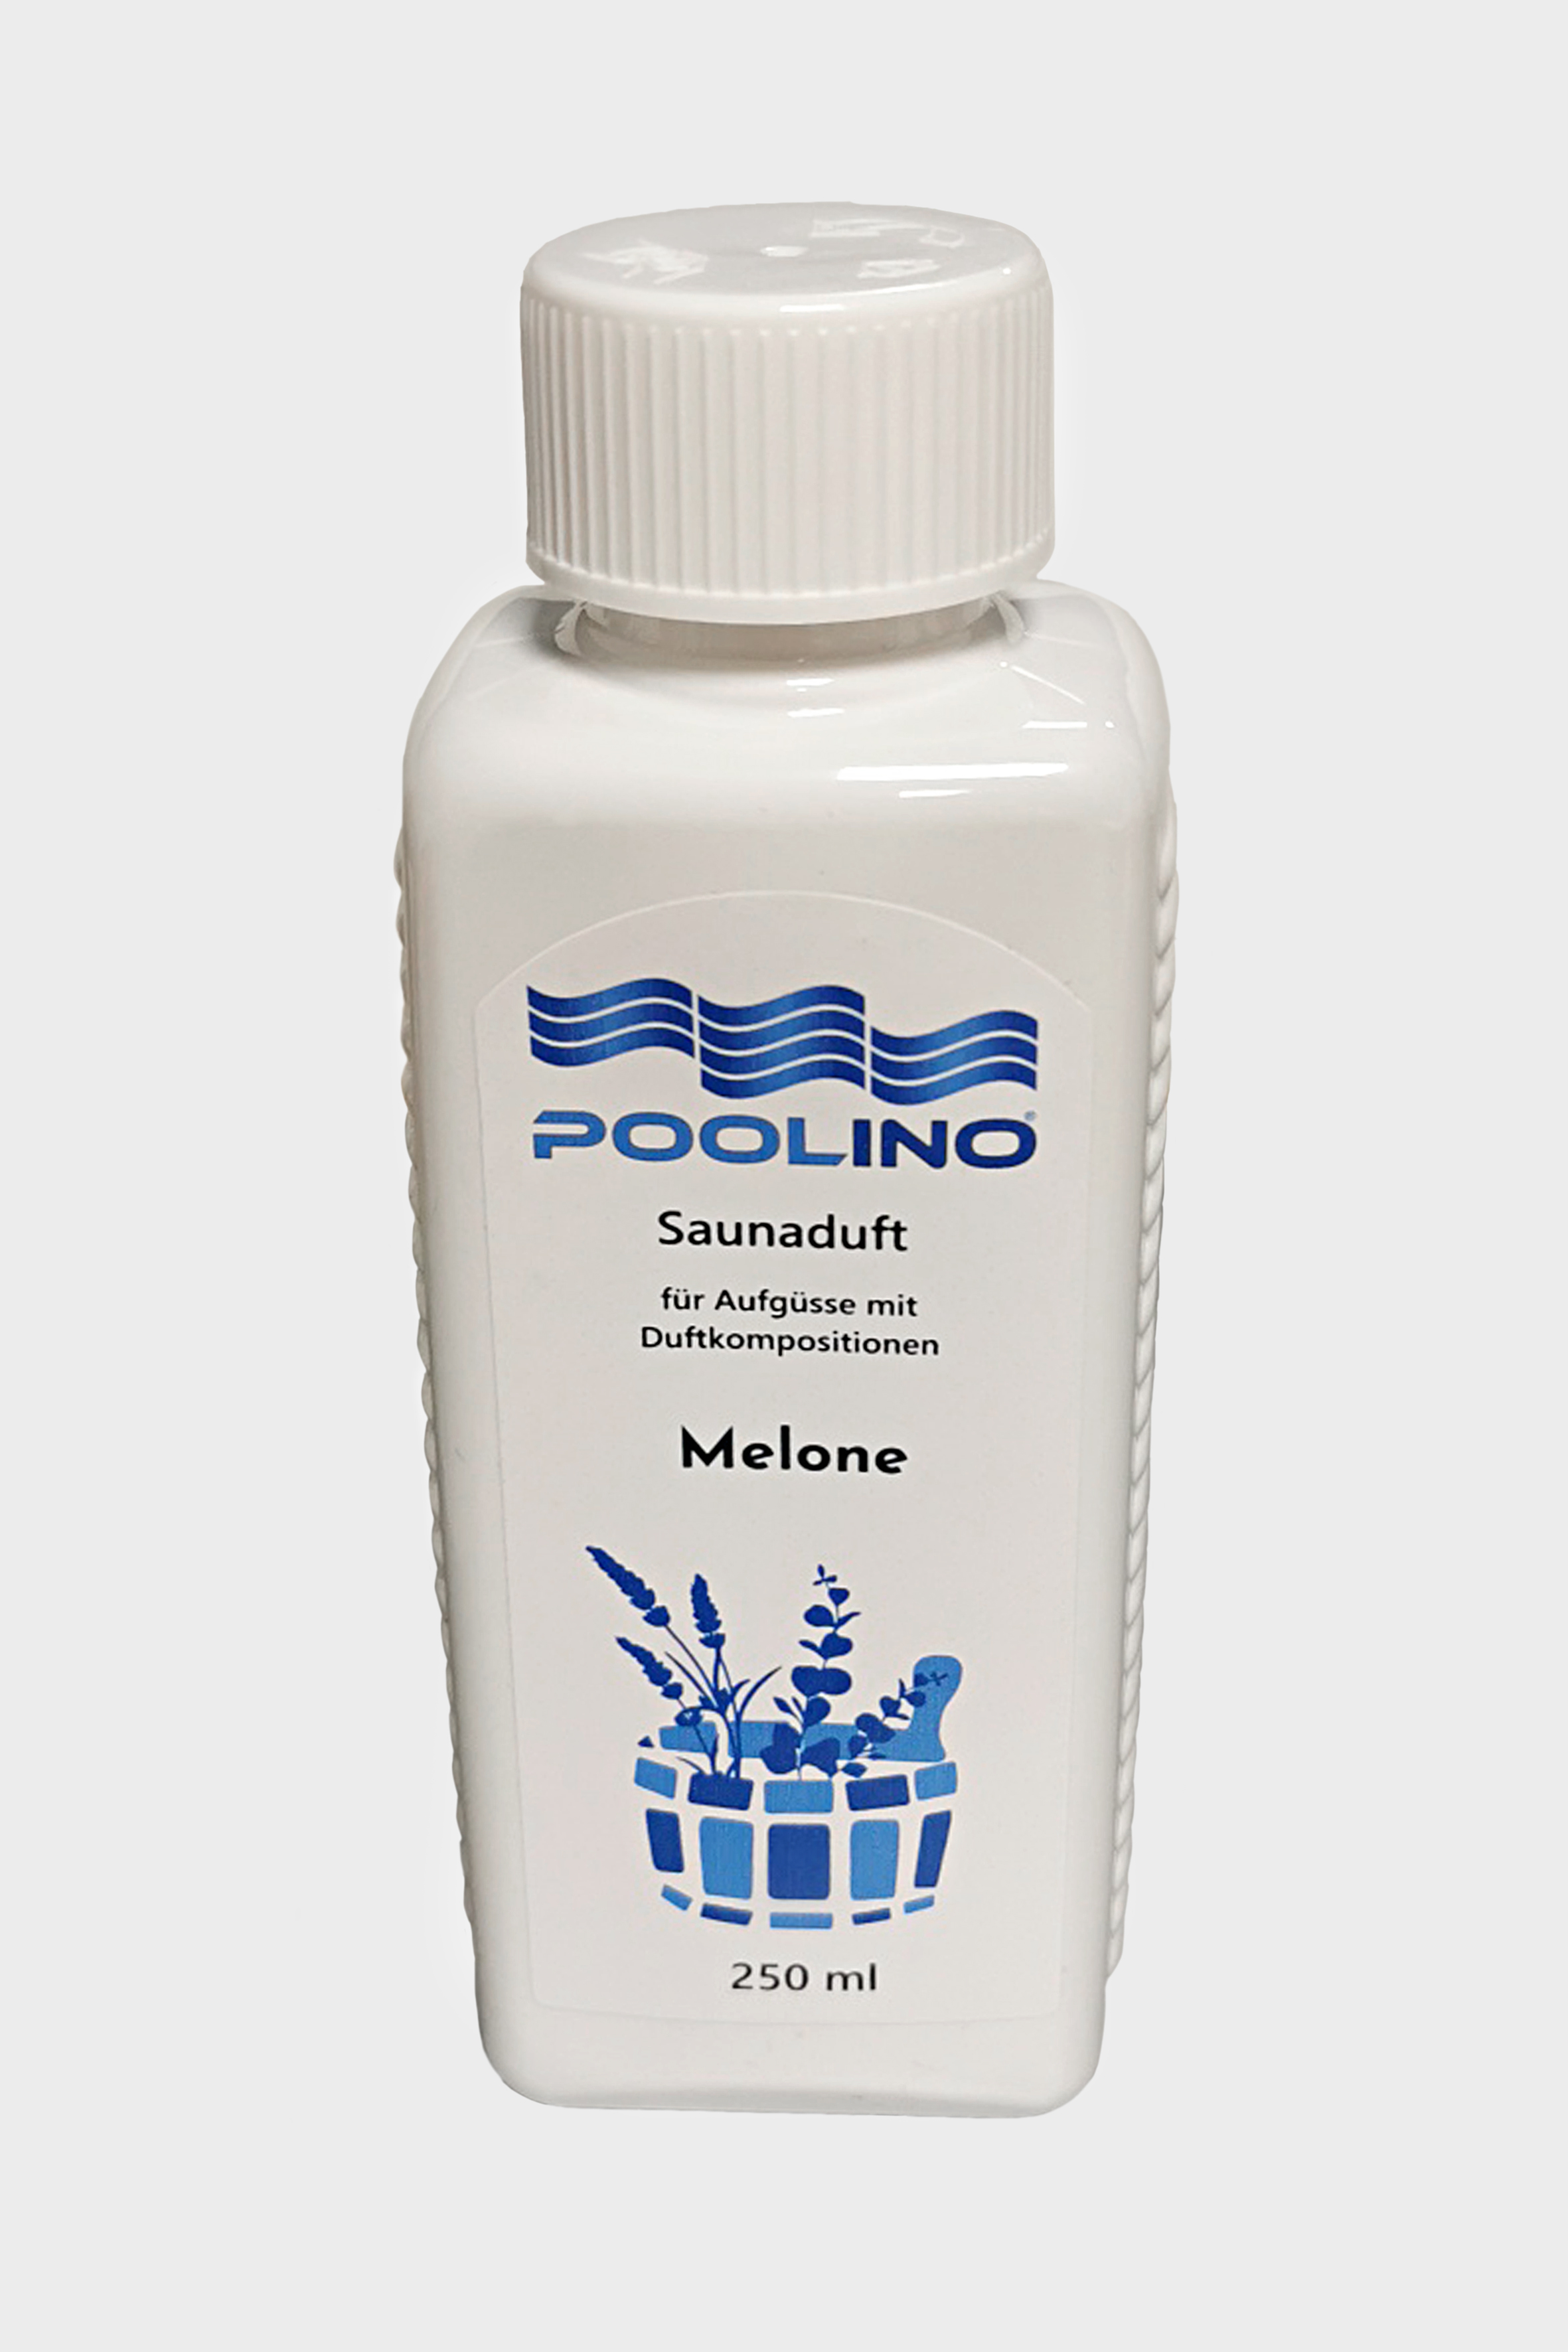 250 ml Poolino® Saunaduft Melone Aufgusskonzentrat